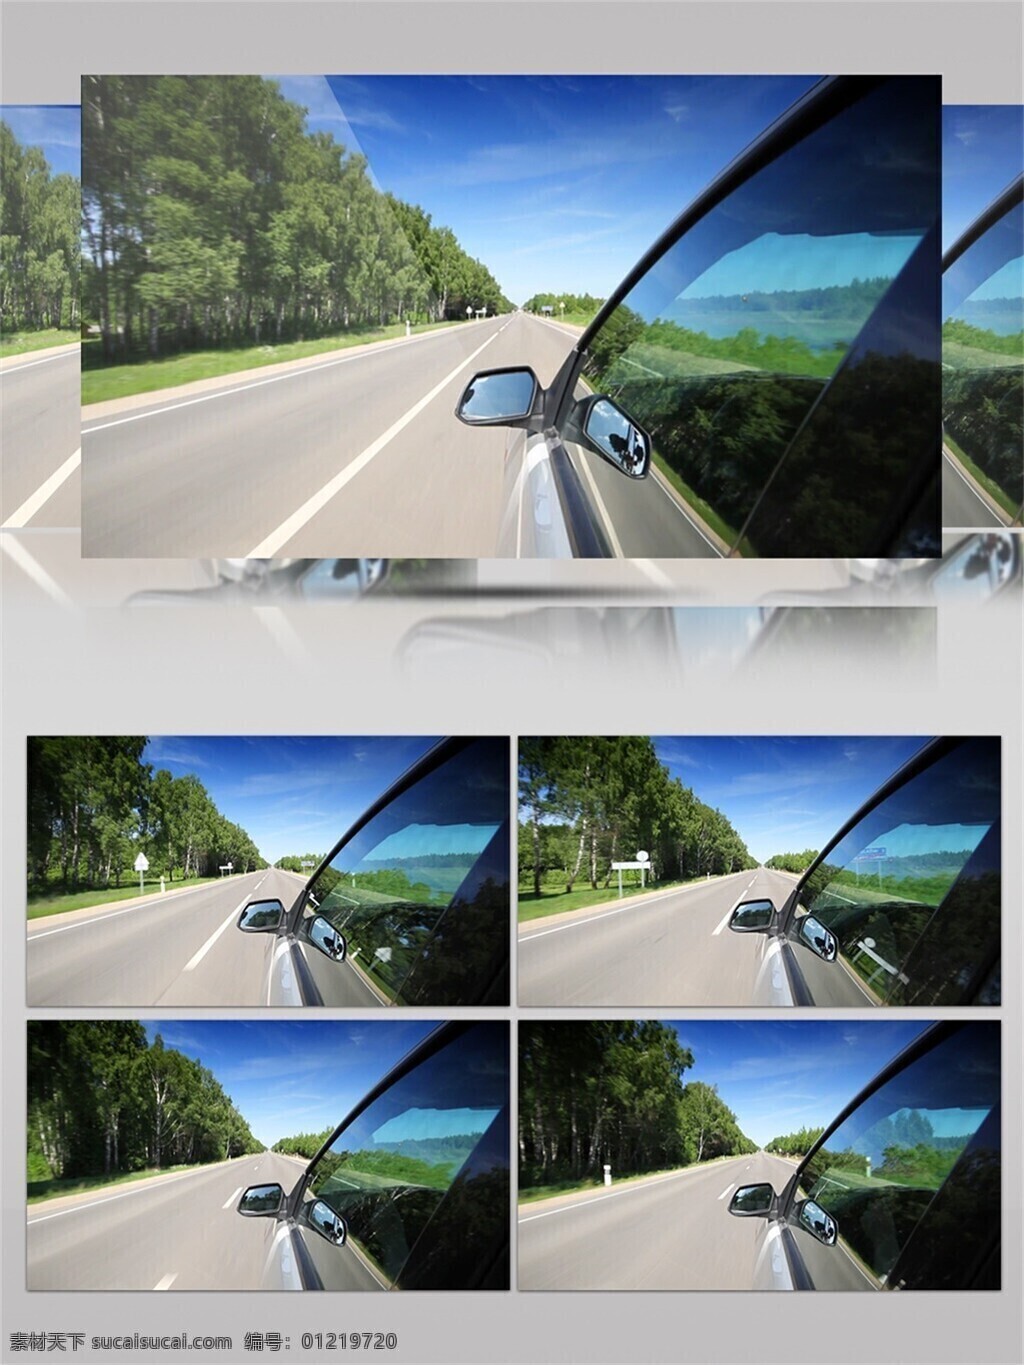 开车 乡村 公路 上 行驶 视频 车辆 快速 绿树 道路 蓝天白云 乡间道路 悠闲 阳光明媚